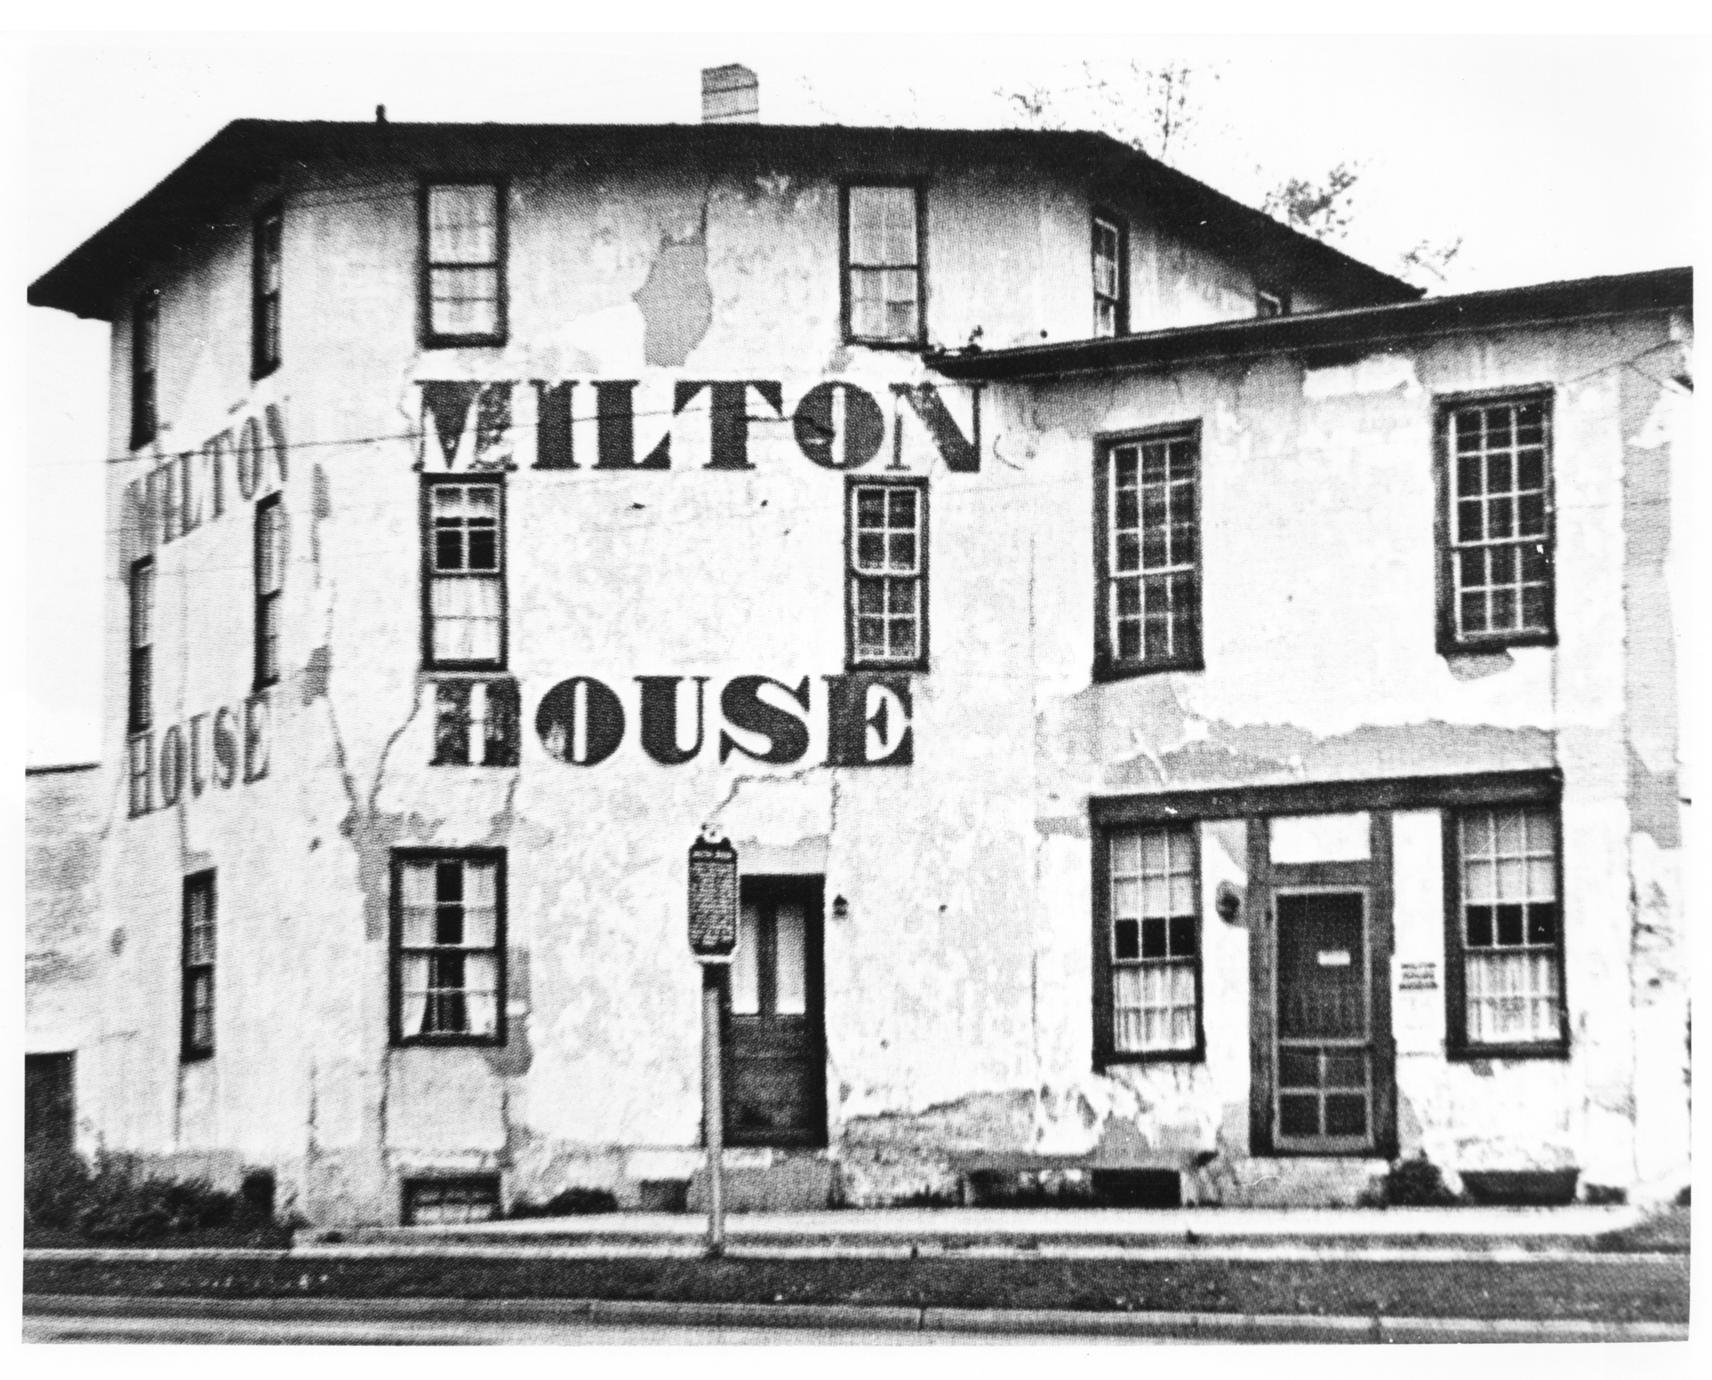 Milton House